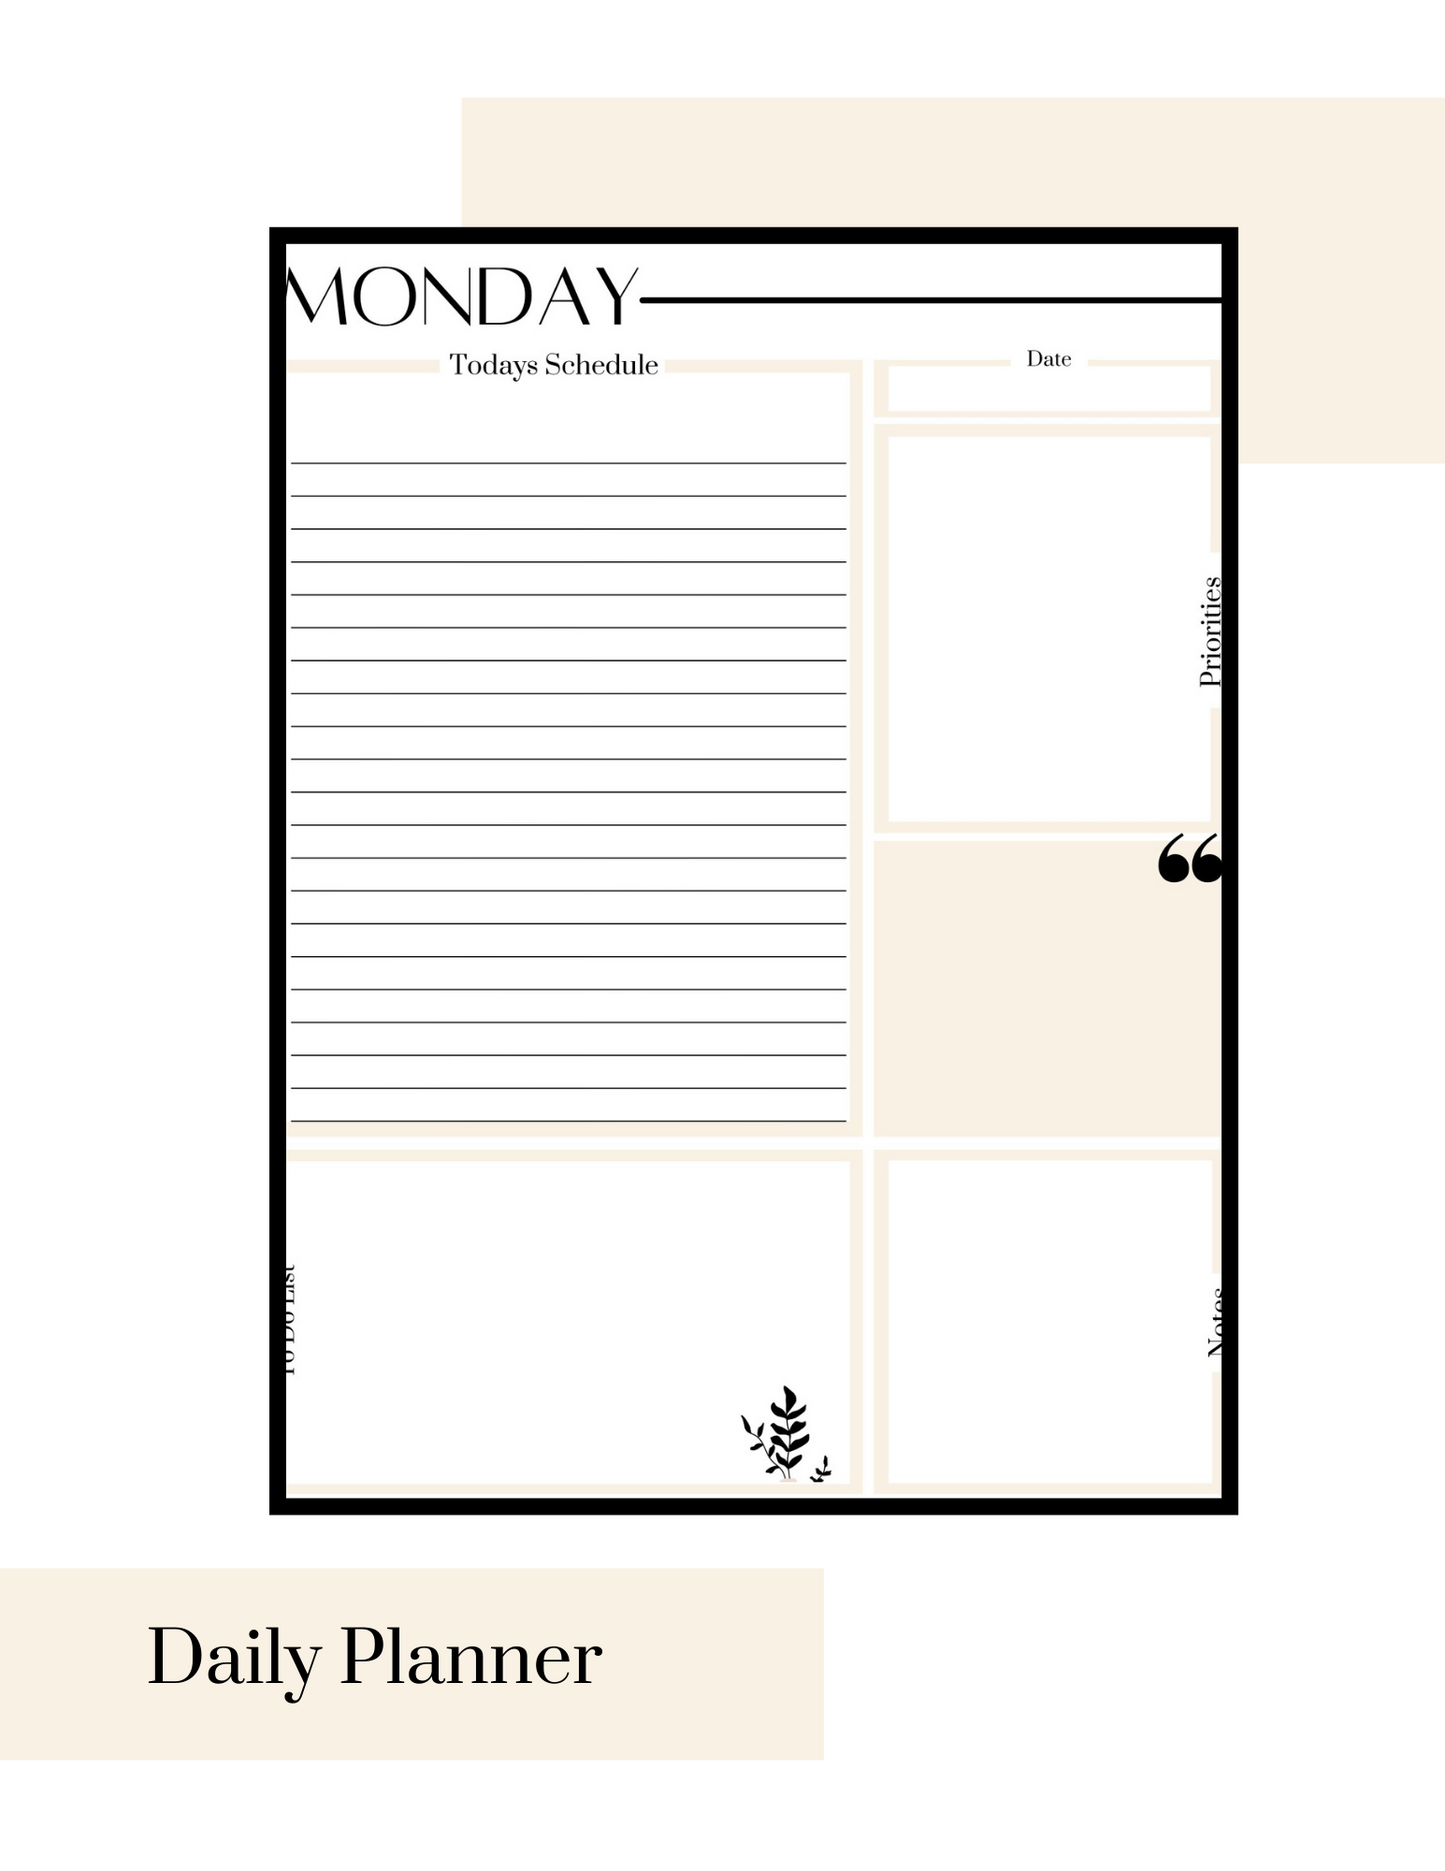 Weekly planner printable